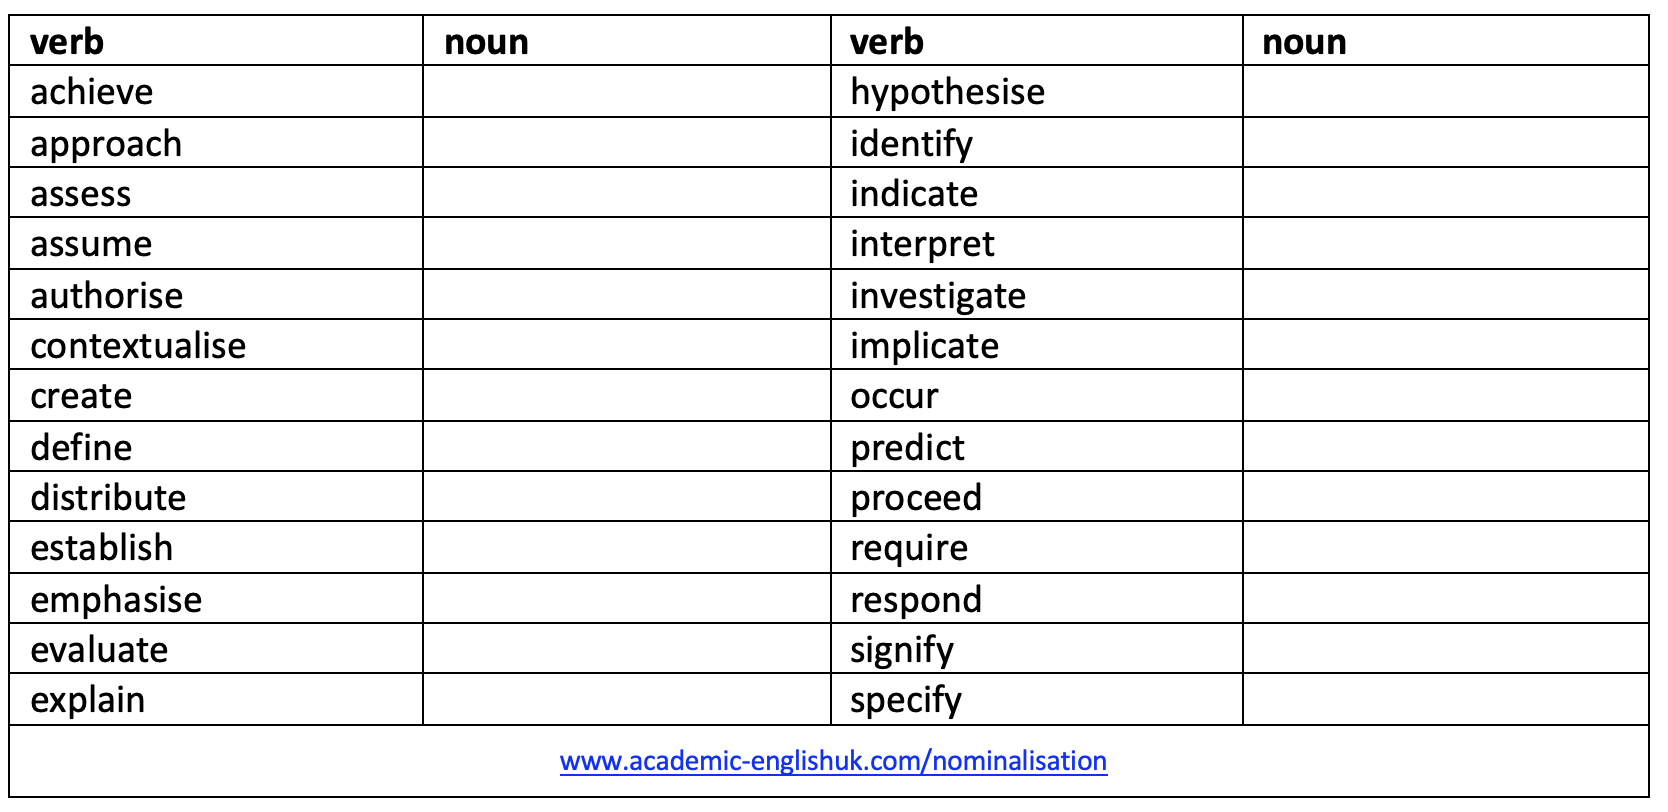 academic verbs to nouns